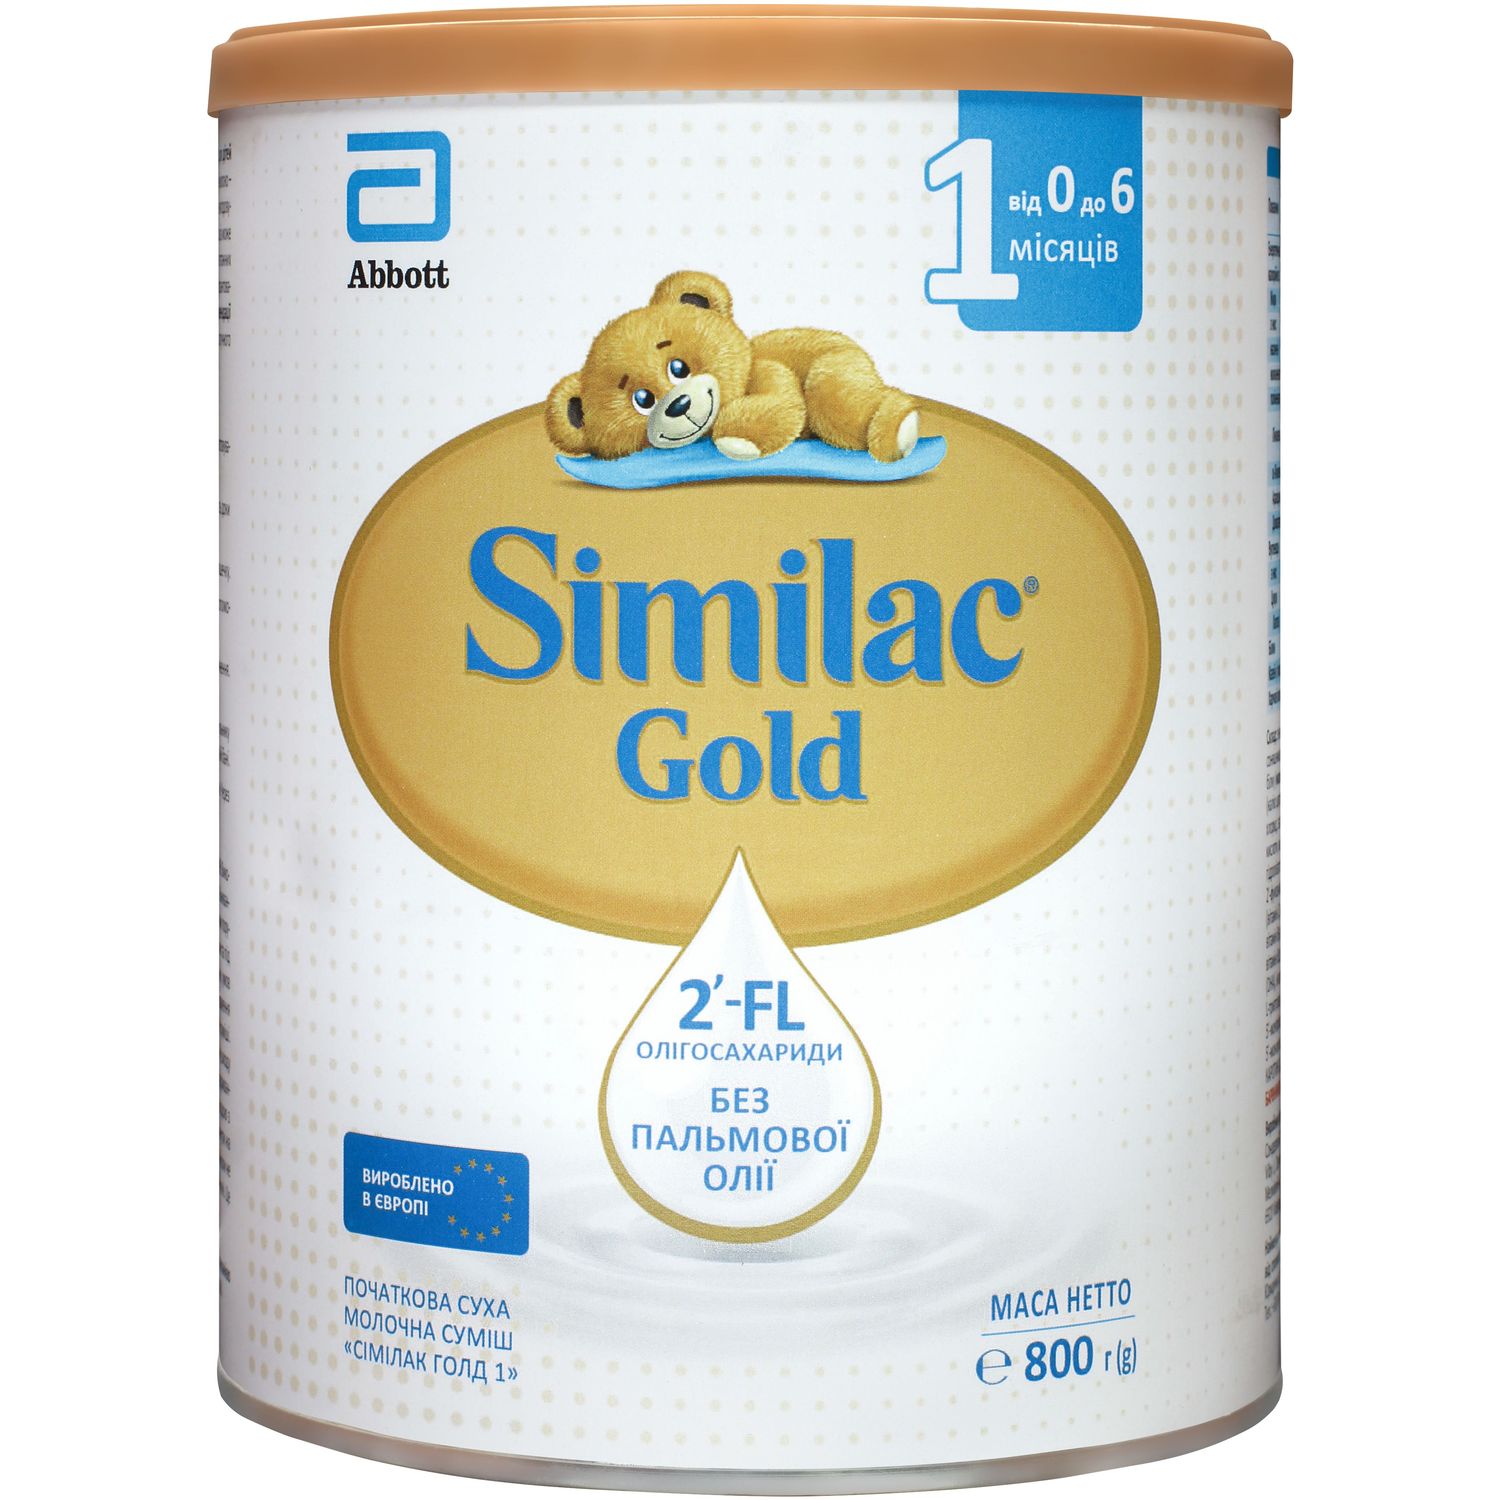 Суха молочна суміш Similac Gold 1, 800 г - фото 1